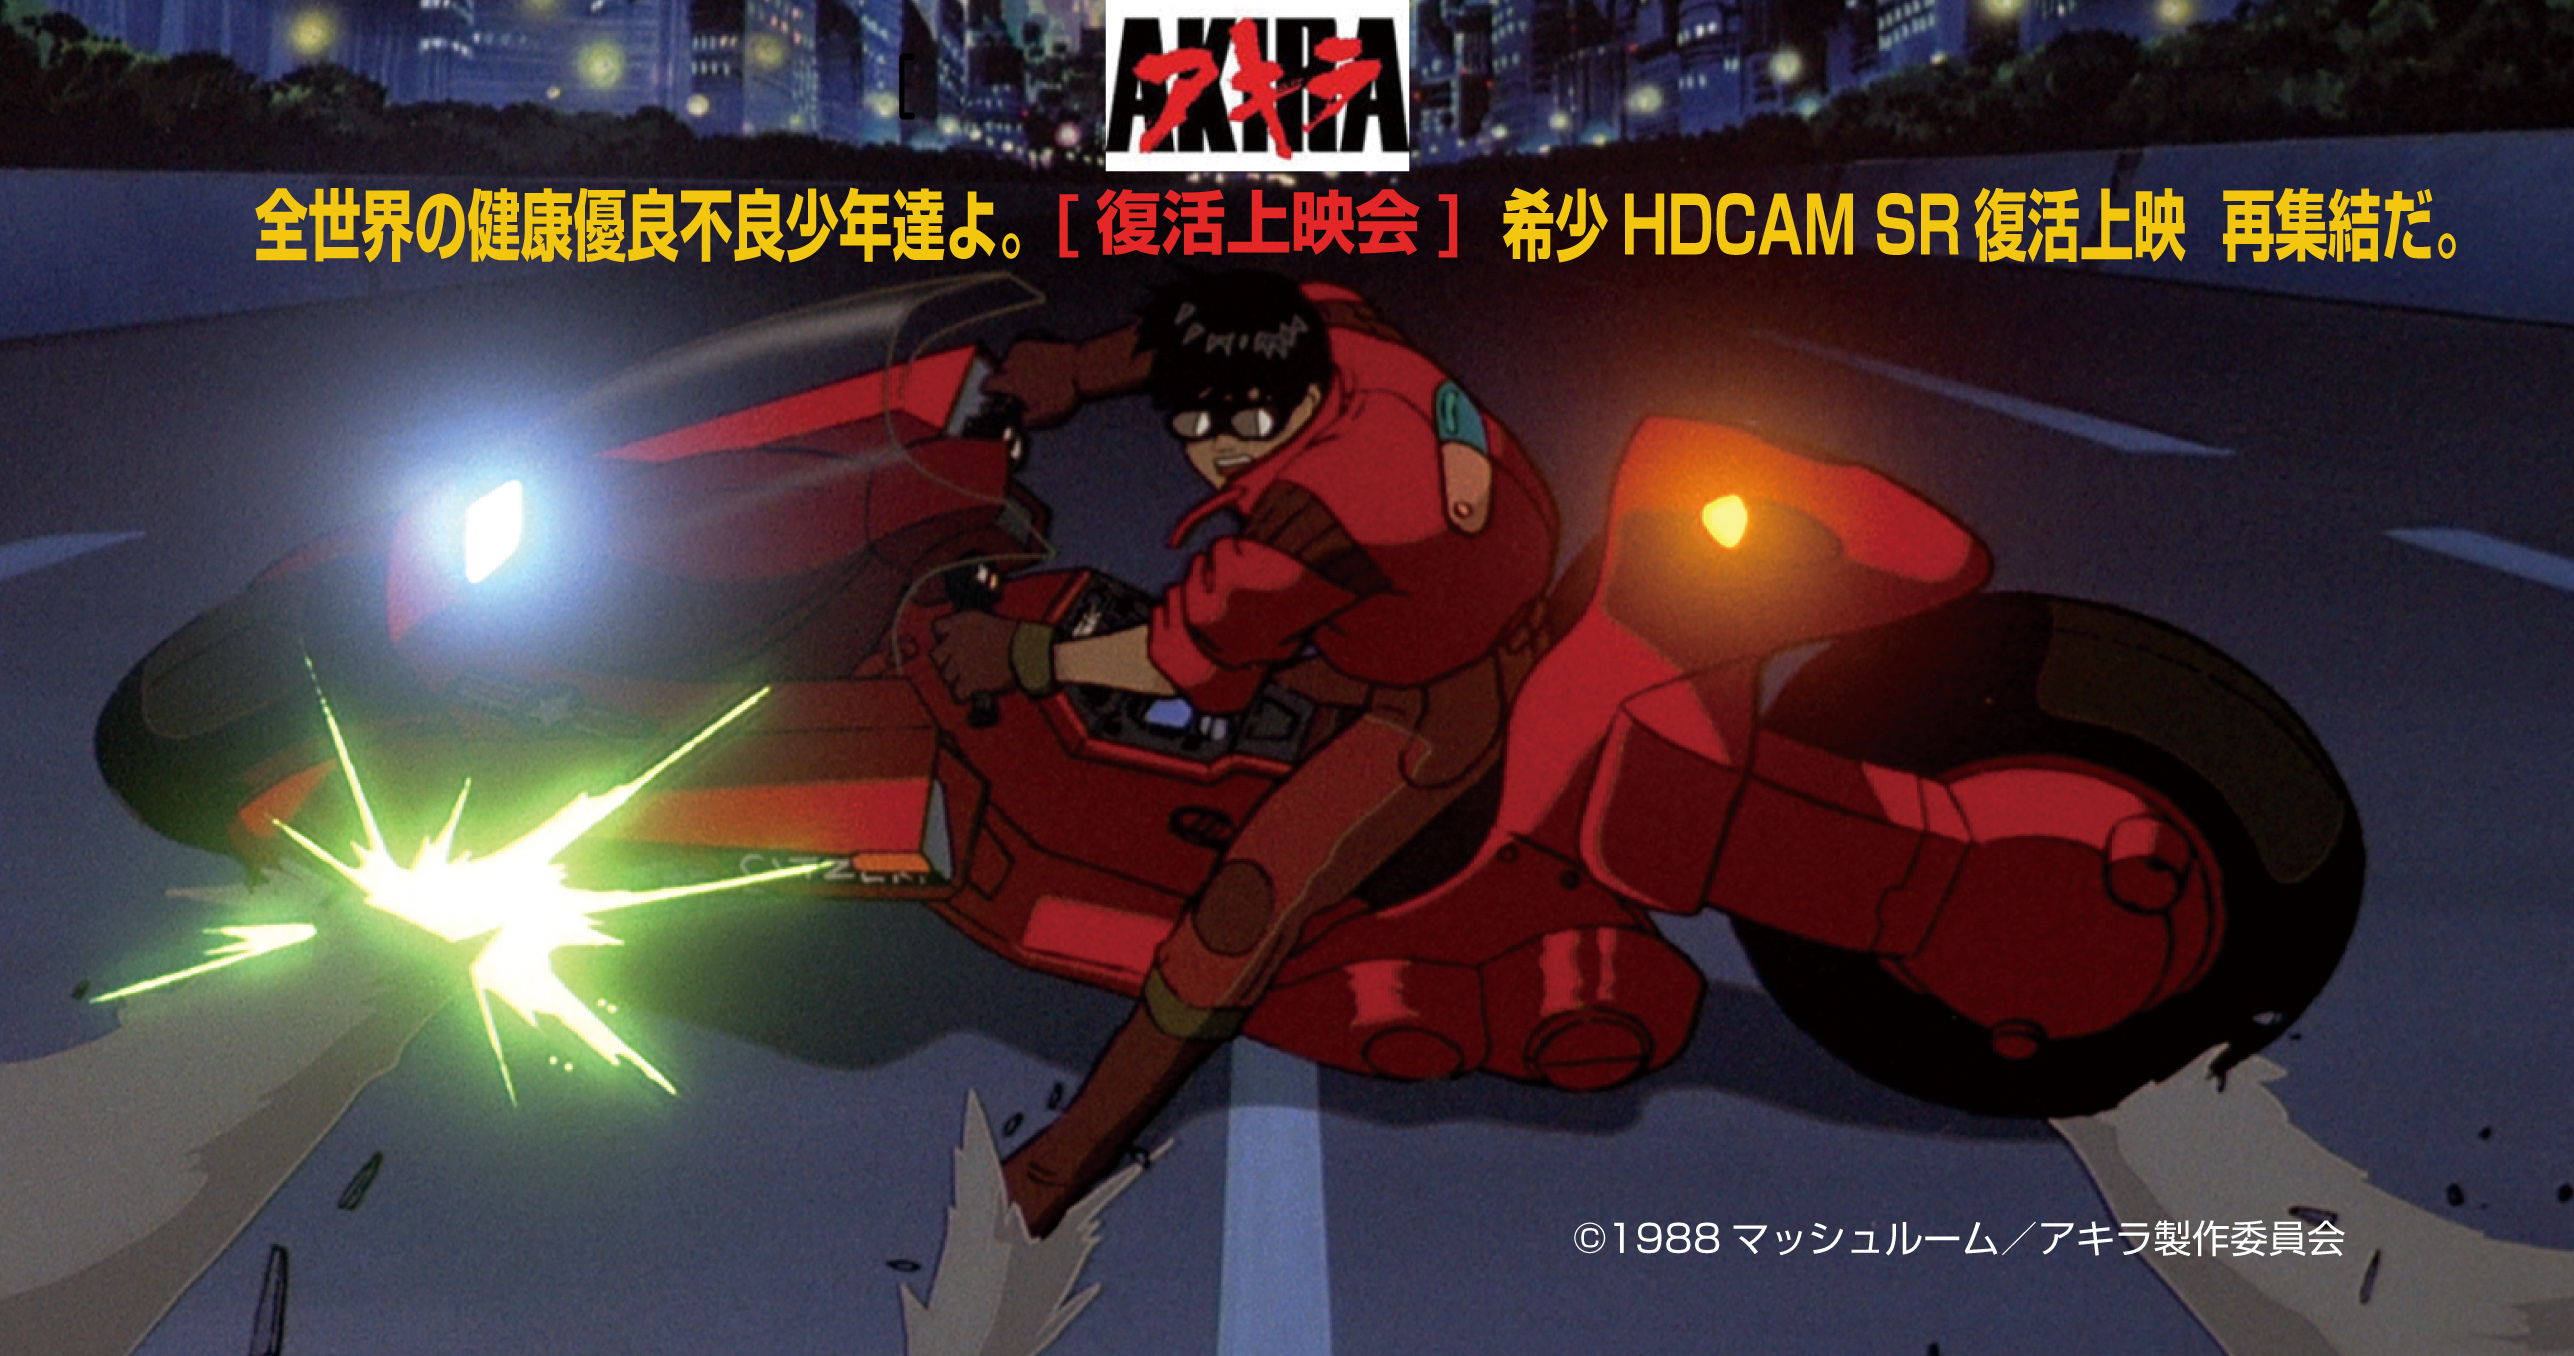 日本アニメの最高傑作 Akira Hdcam Sr Master上映決定 ブレインズインターナショナル株式会社のプレスリリース